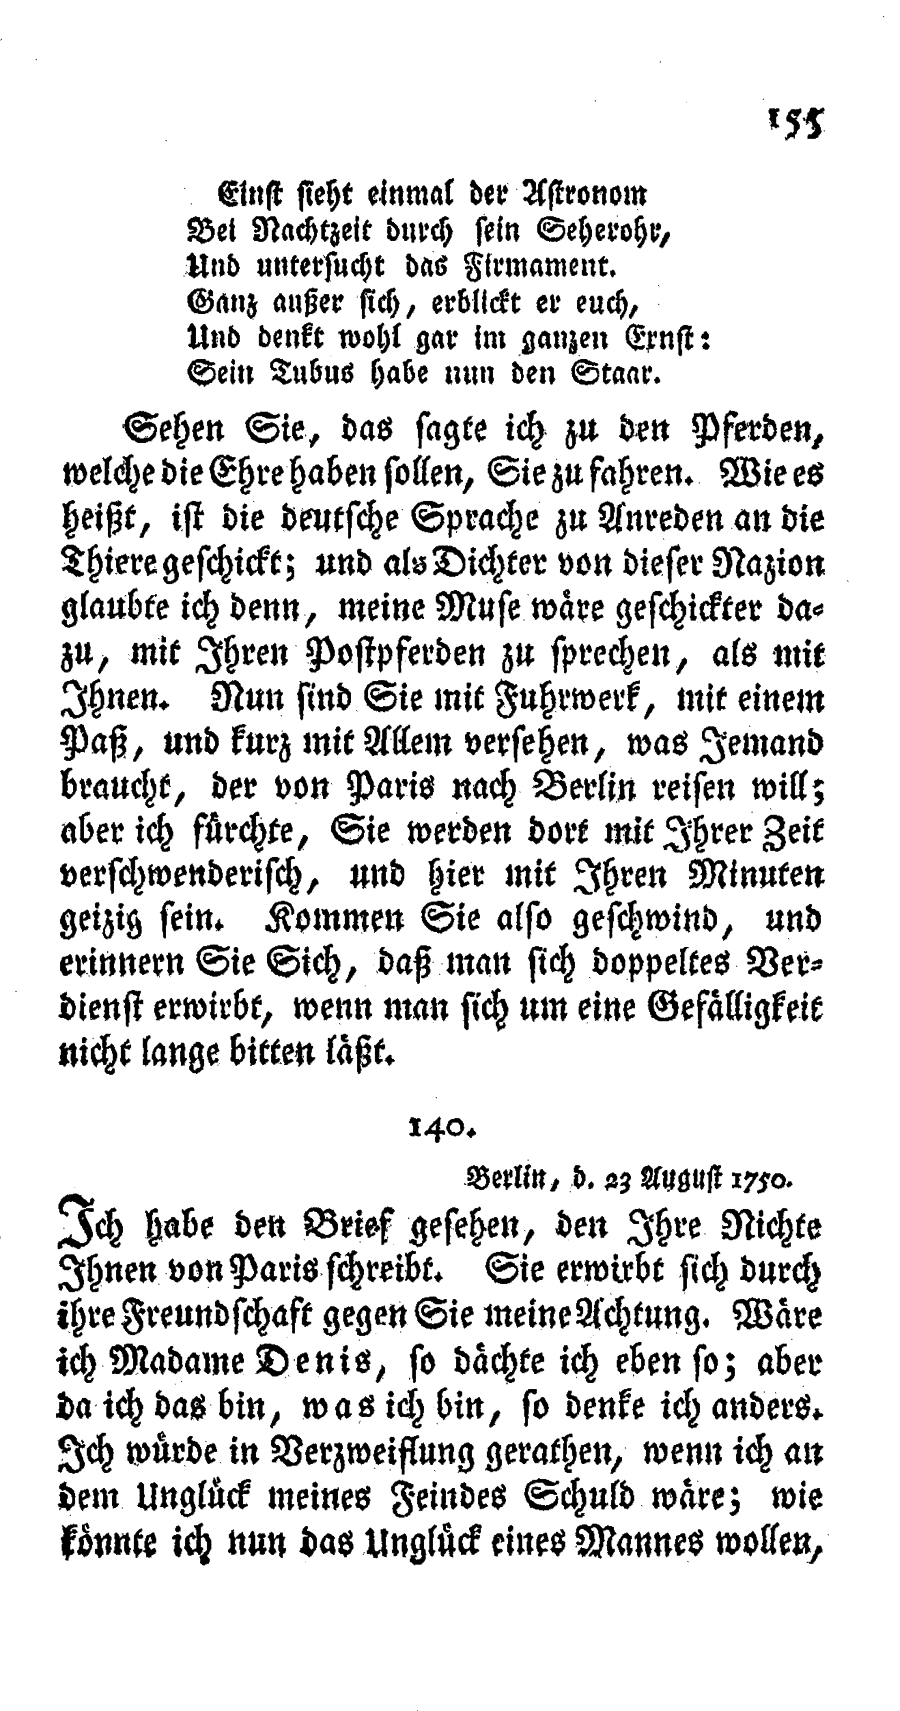 S. 155, Obj. 2